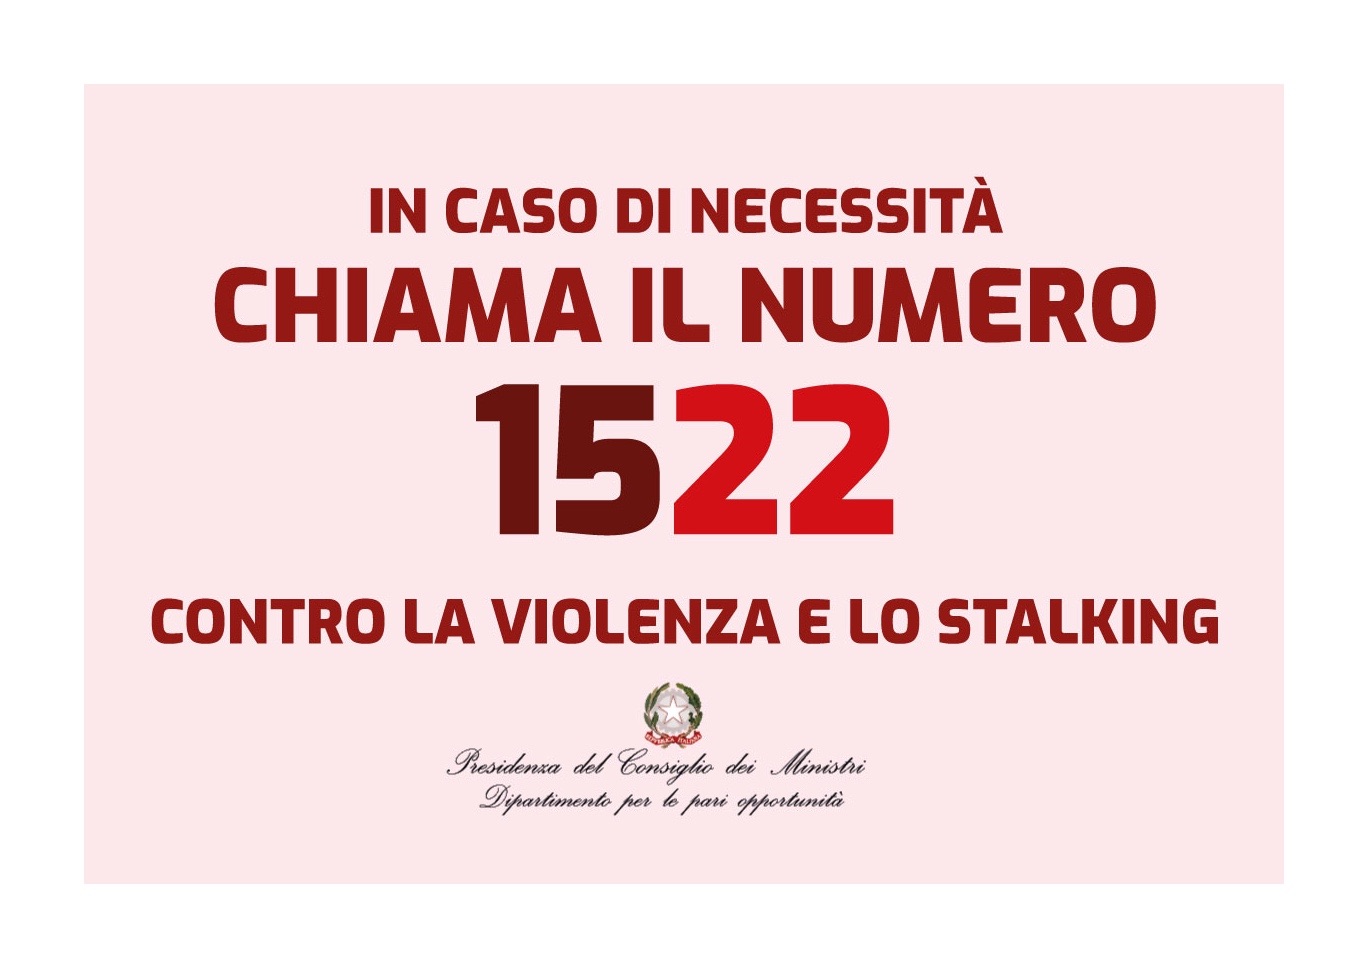 In caso di necessità chiama il numero 1522 contro la violenza e lo stalking